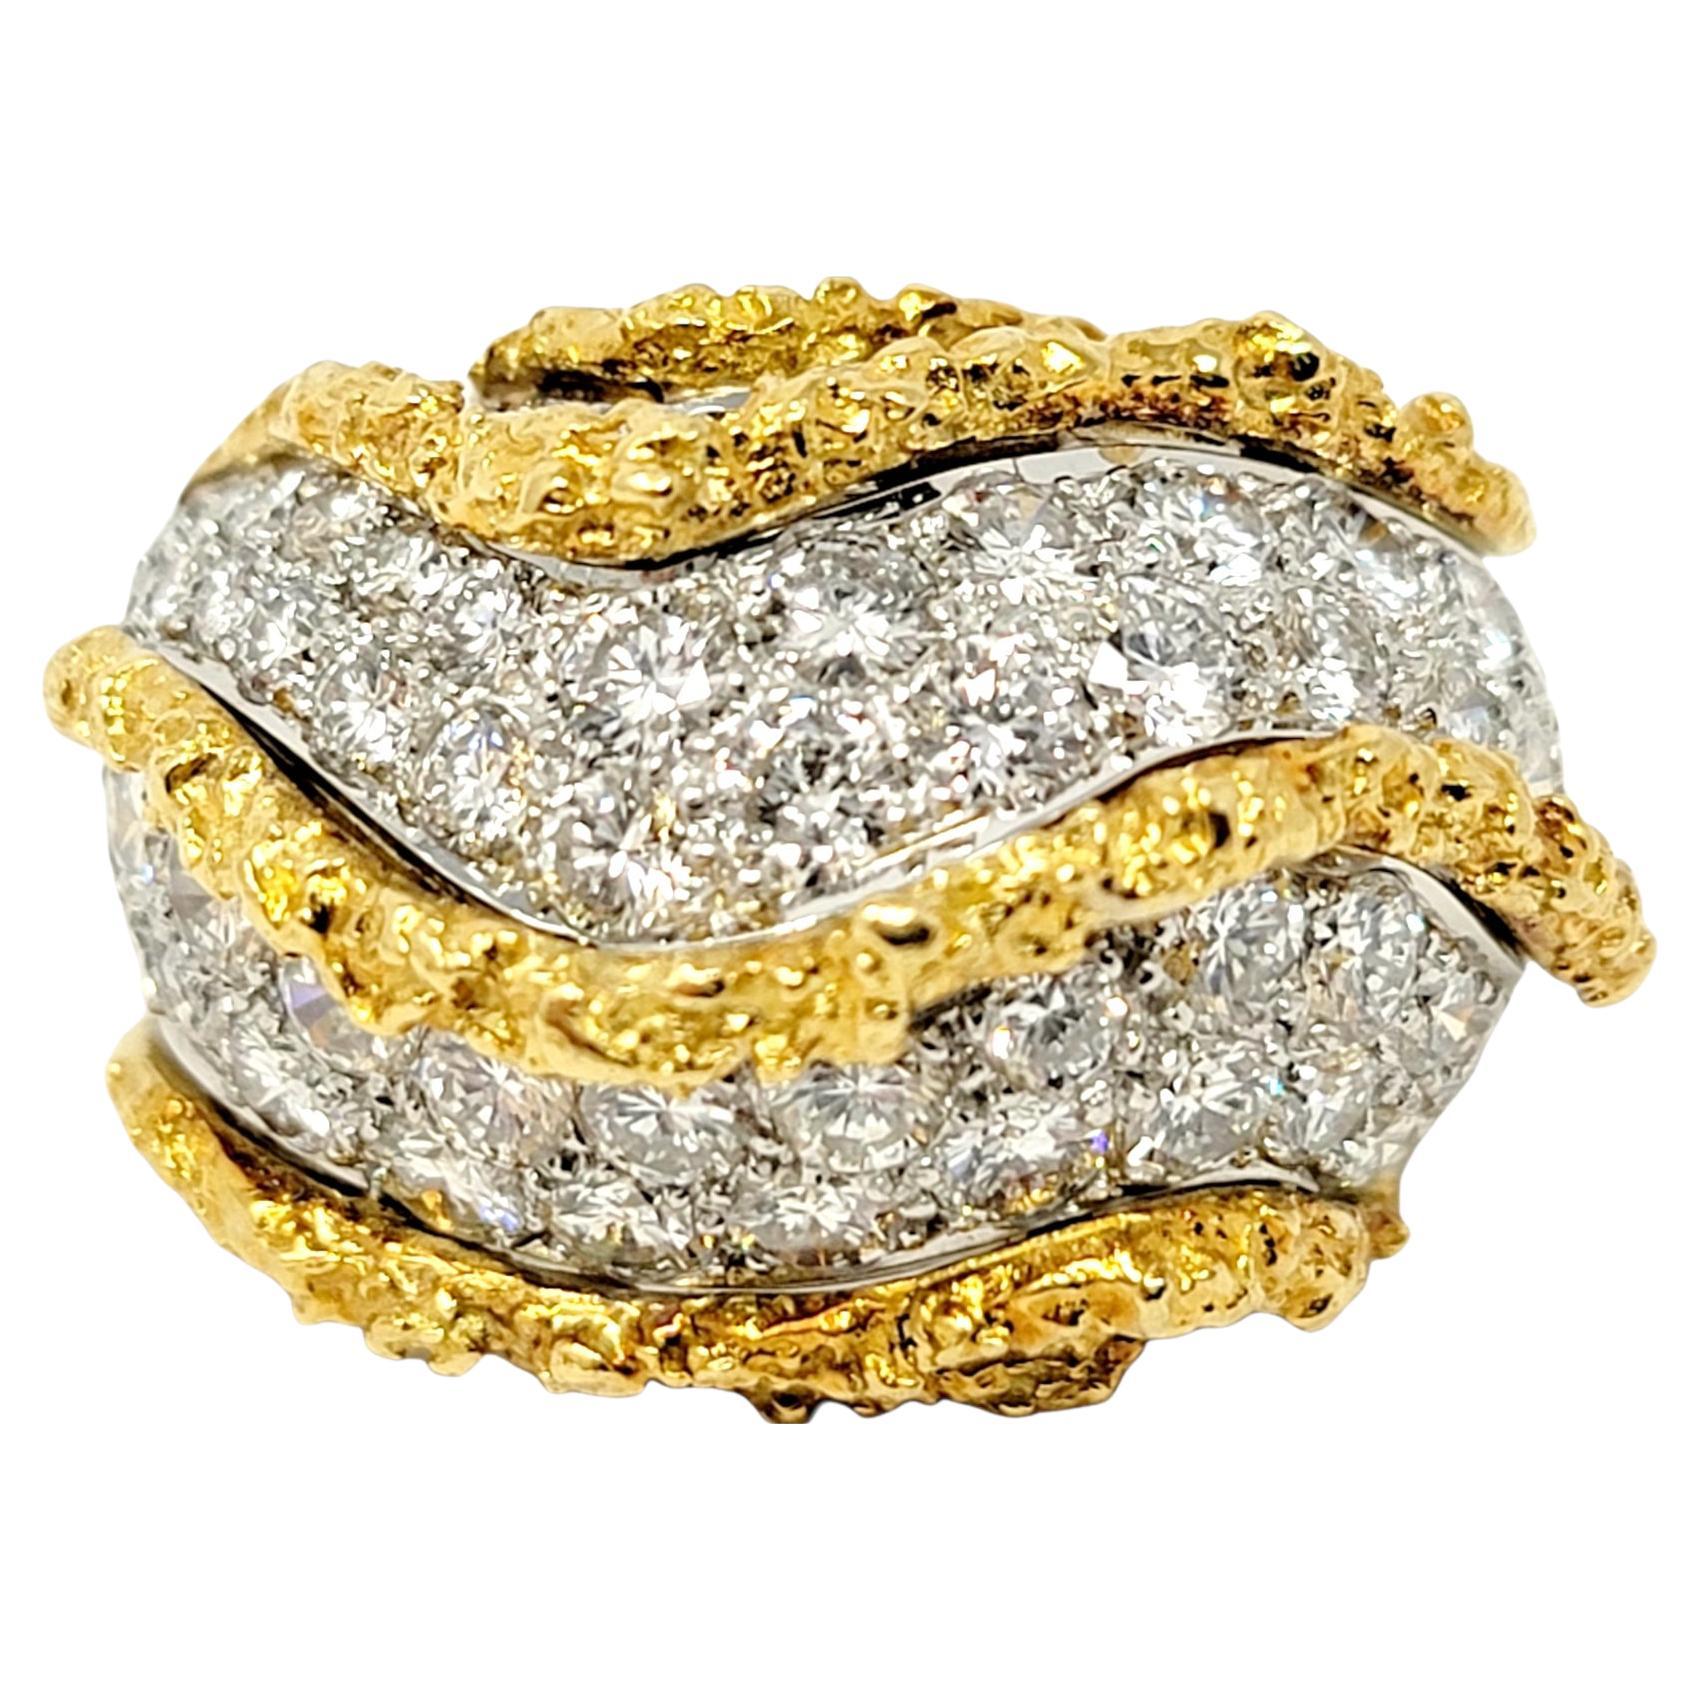 Ringgröße: 7

Der kühne und brillante Kuppelring mit gepflasterten Diamanten aus Gold im Flussstil wird Ihren Finger mit Eleganz erfüllen. Dieses schwere, detaillierte Stück ist sowohl von der Größe als auch vom Design her absolut exquisit.